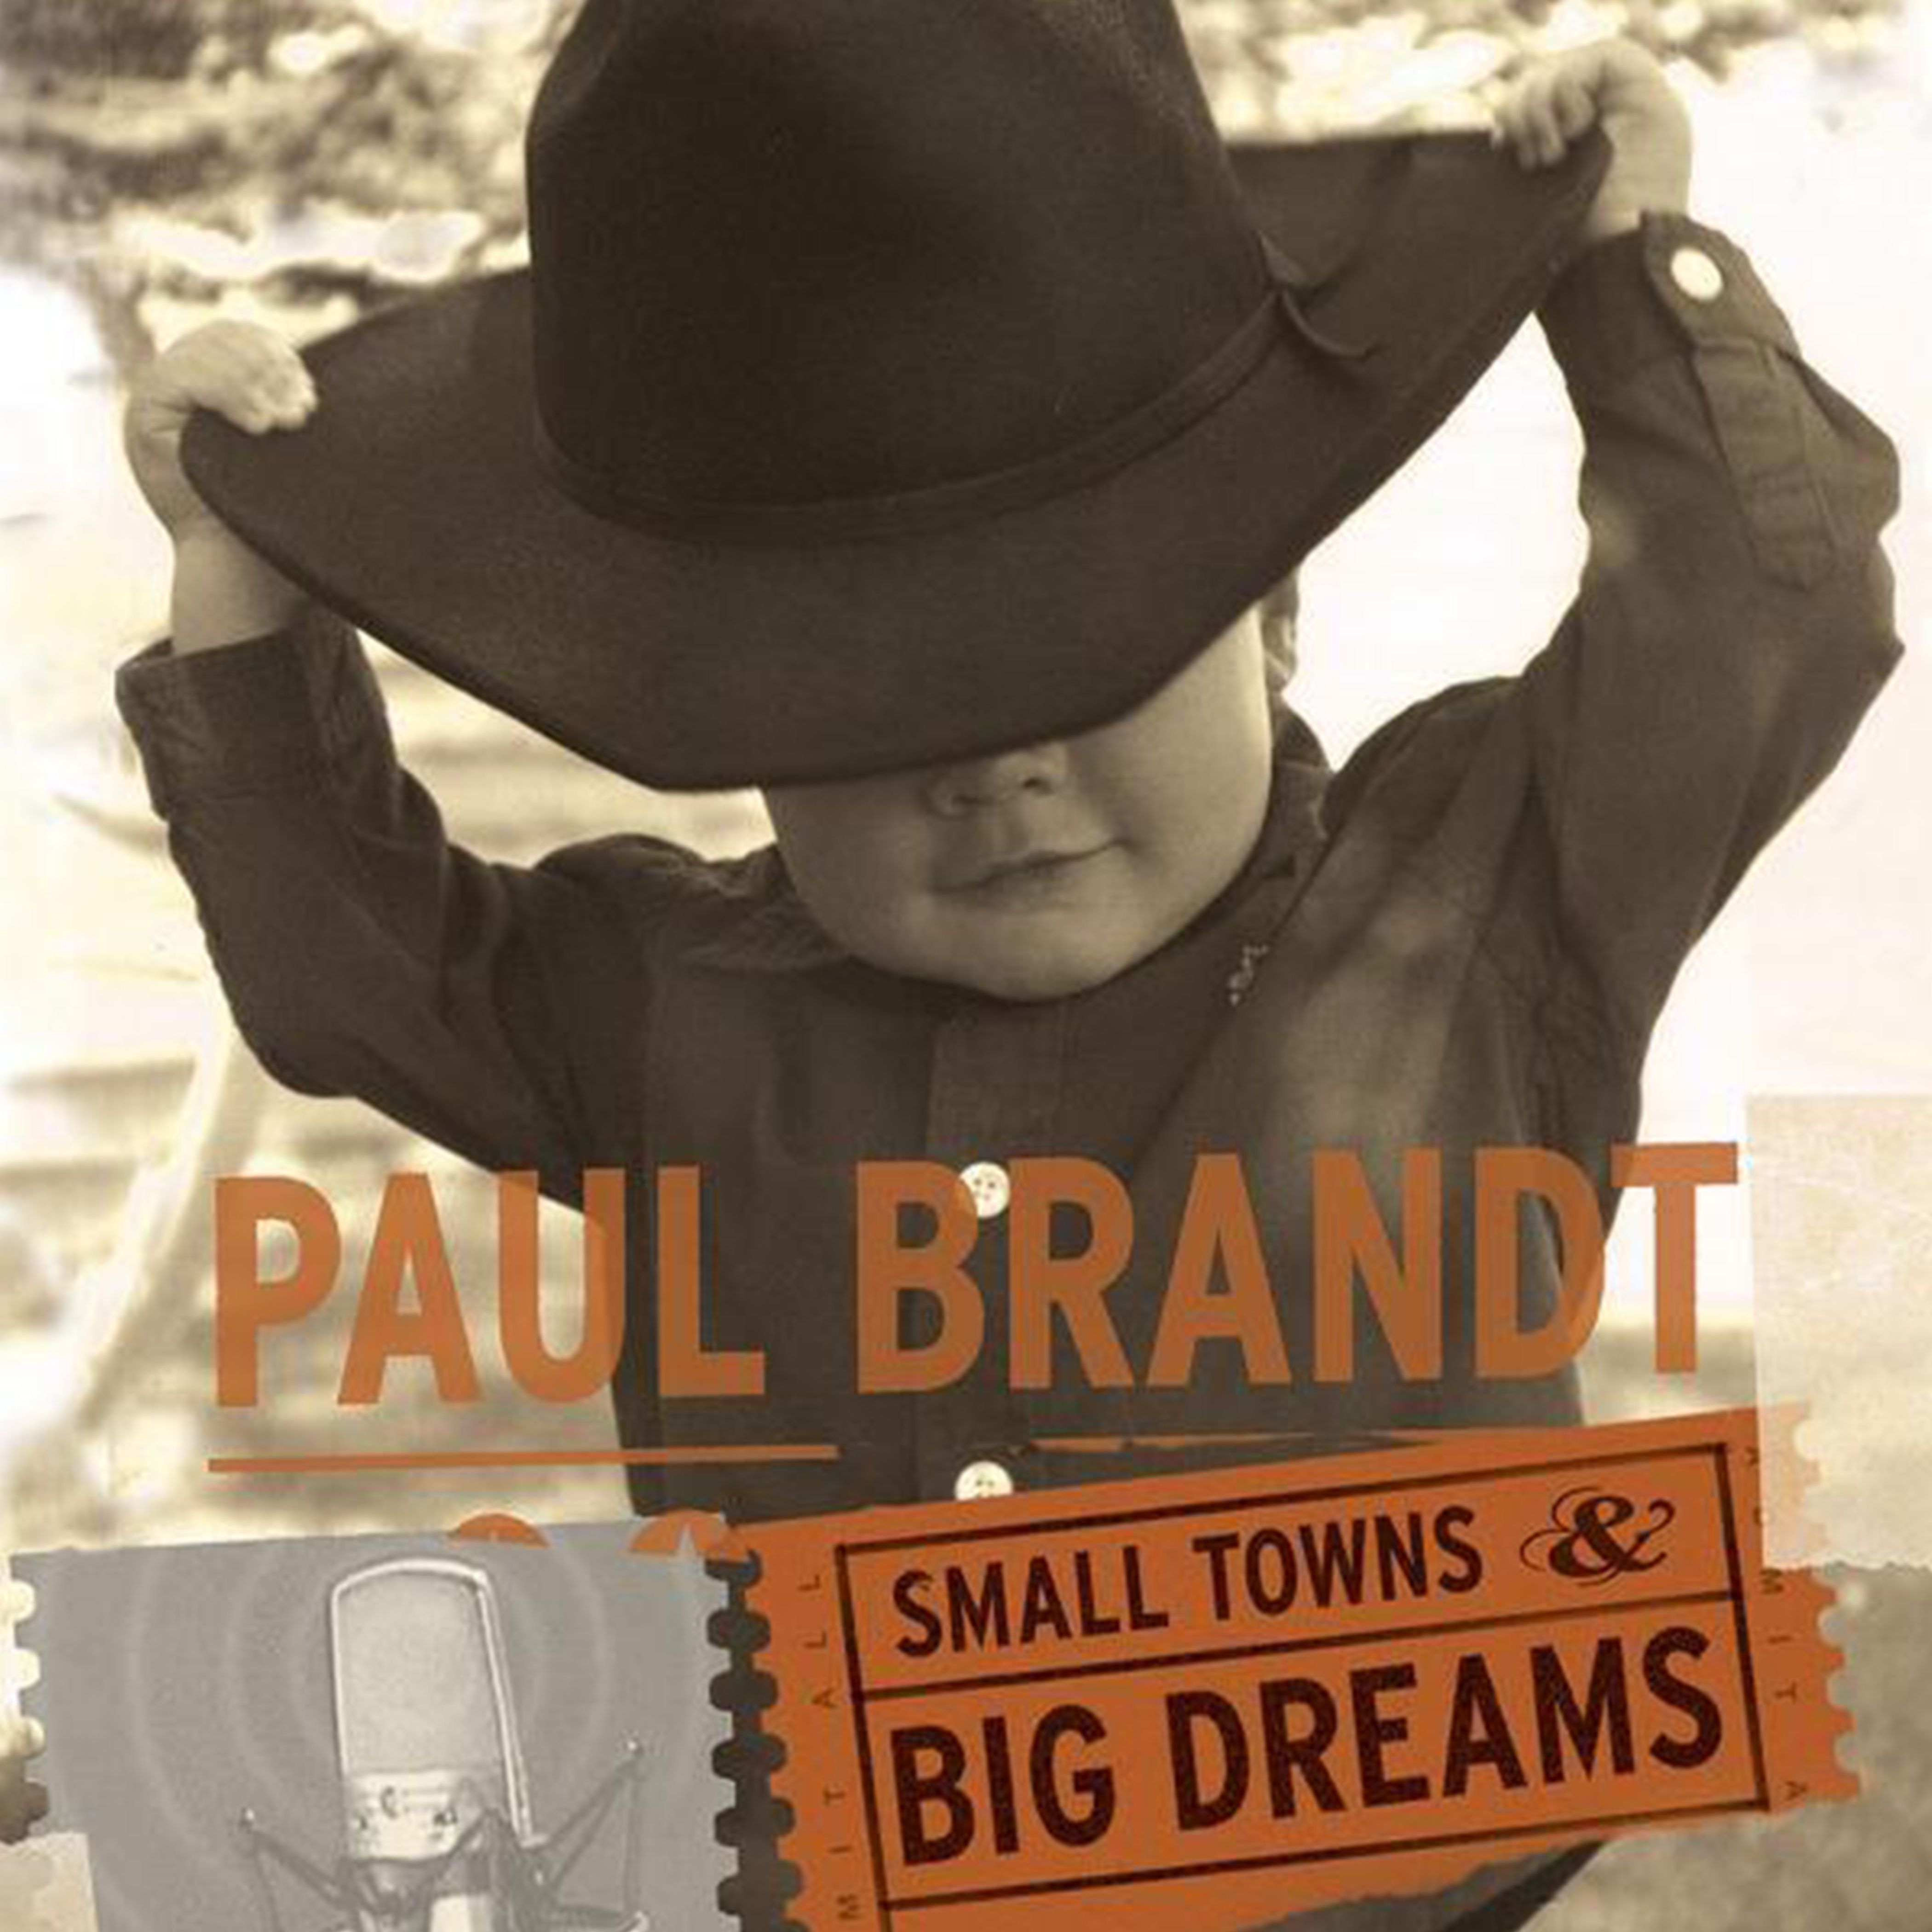 Brandt, Paul - Small Towns & Big Dreams